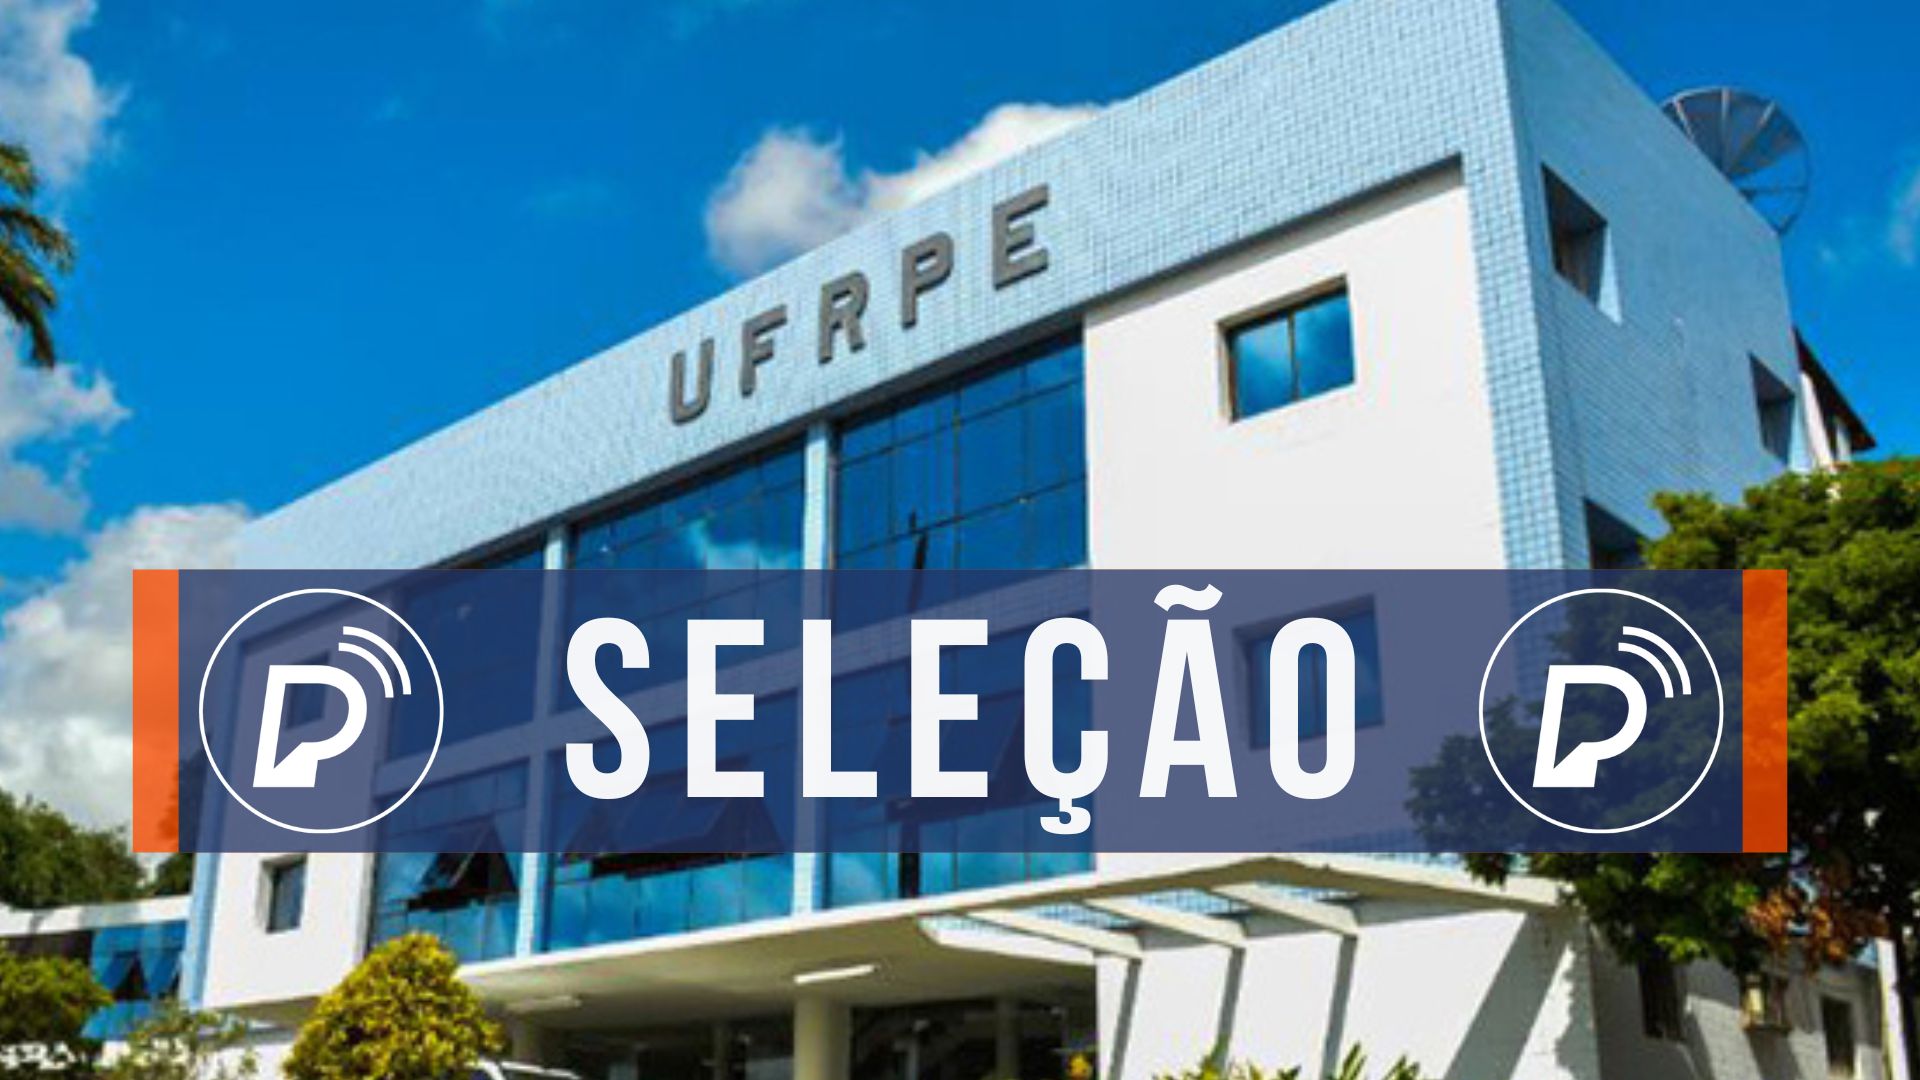 UFRPE lança Edital com 1161 vagas para Cursos de Graduação a Distância